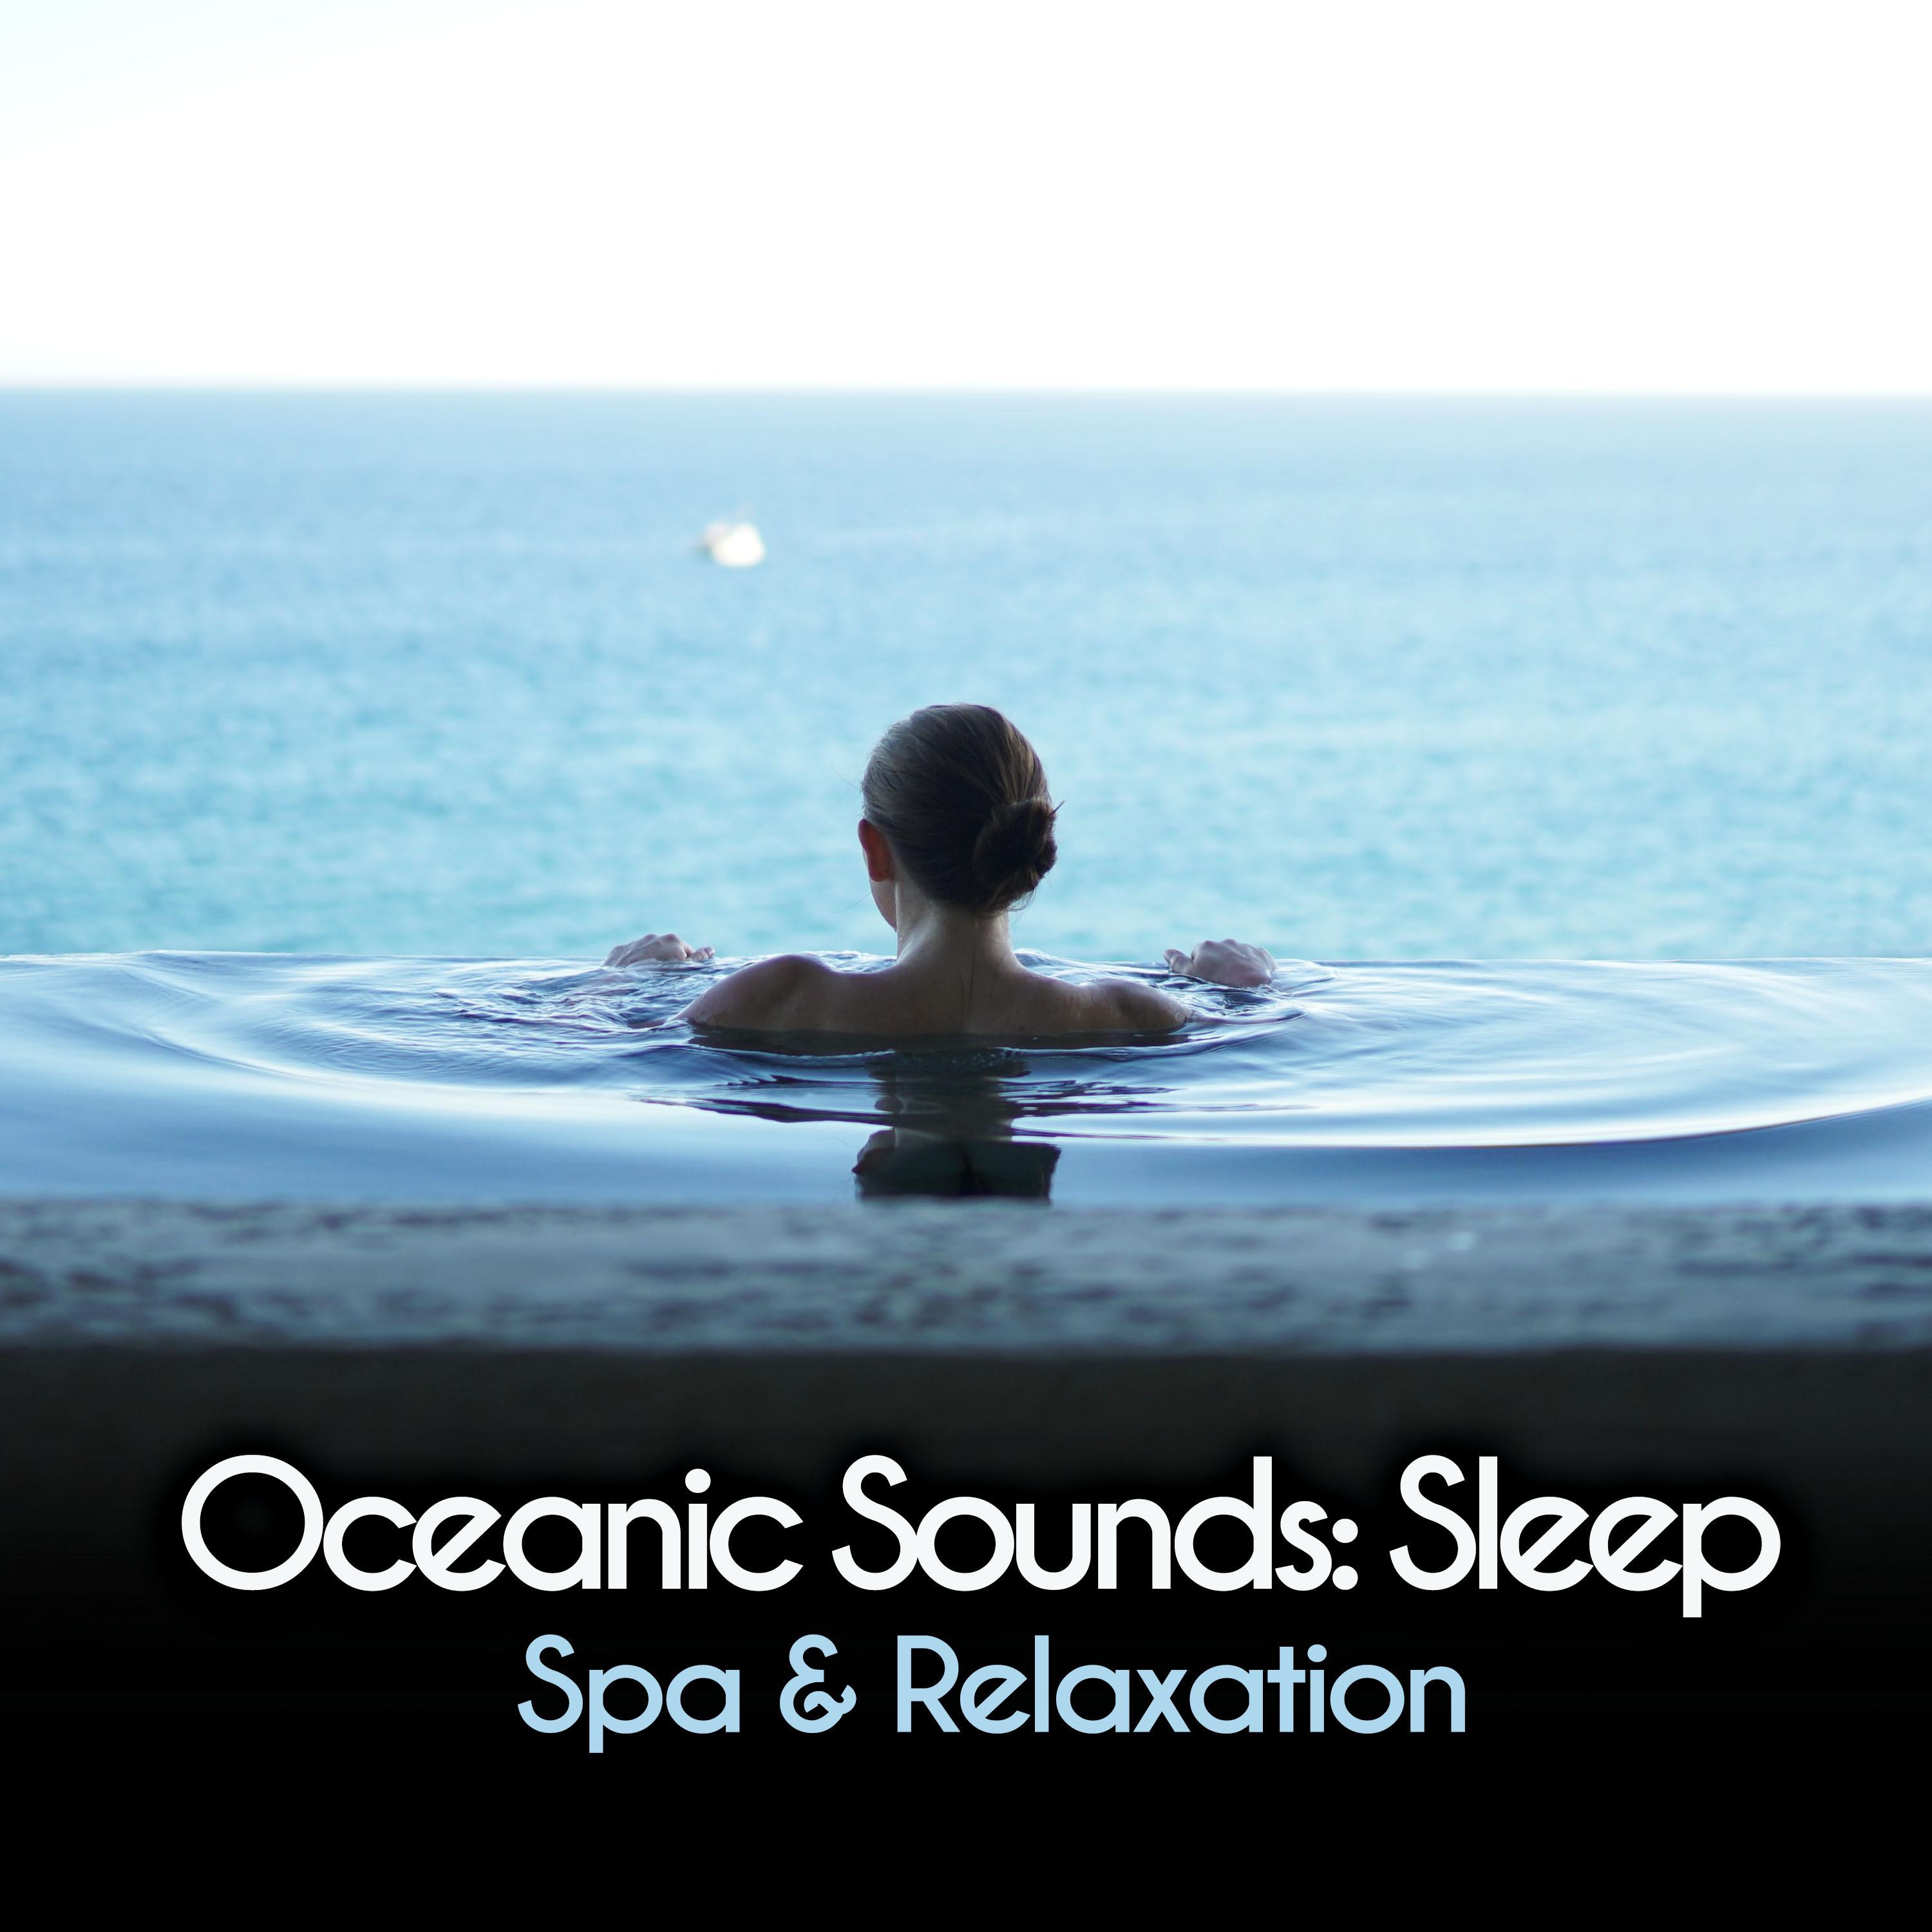 Oceanic Sounds: Sleep